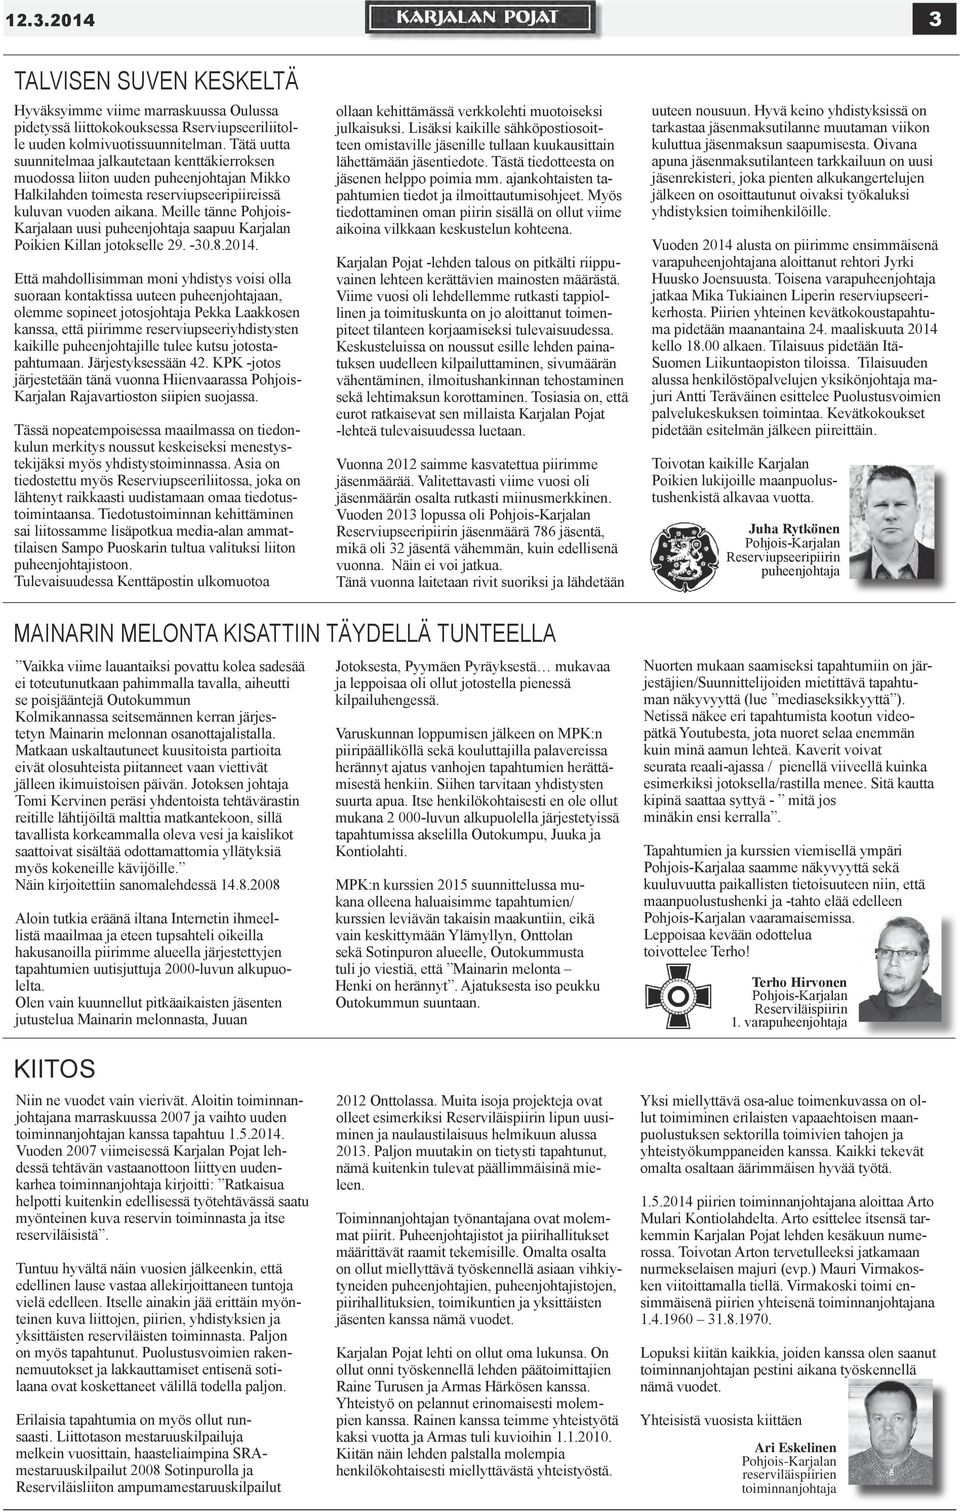 Meille tänne Pohjois- Karjalaan uusi puheenjohtaja saapuu Karjalan Poikien Killan jotokselle 29. -30.8.2014.